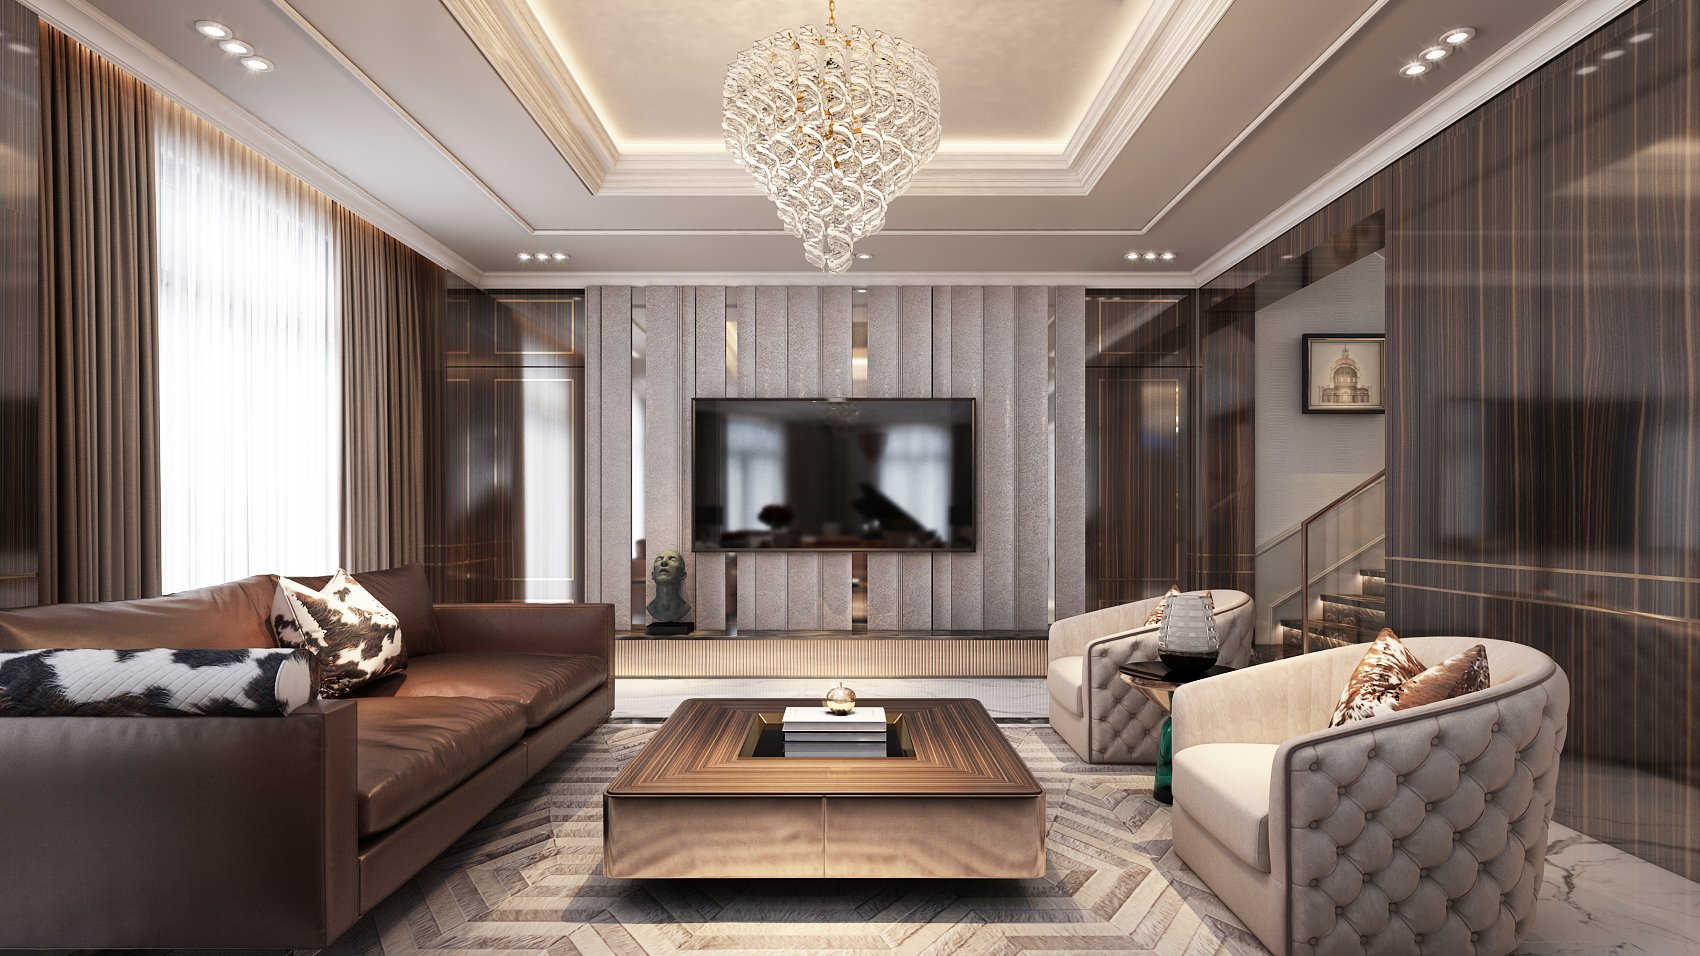 Sắc nâu của bộ sofa Century làm cho không gian nhà trở nên ấm cúng hơn